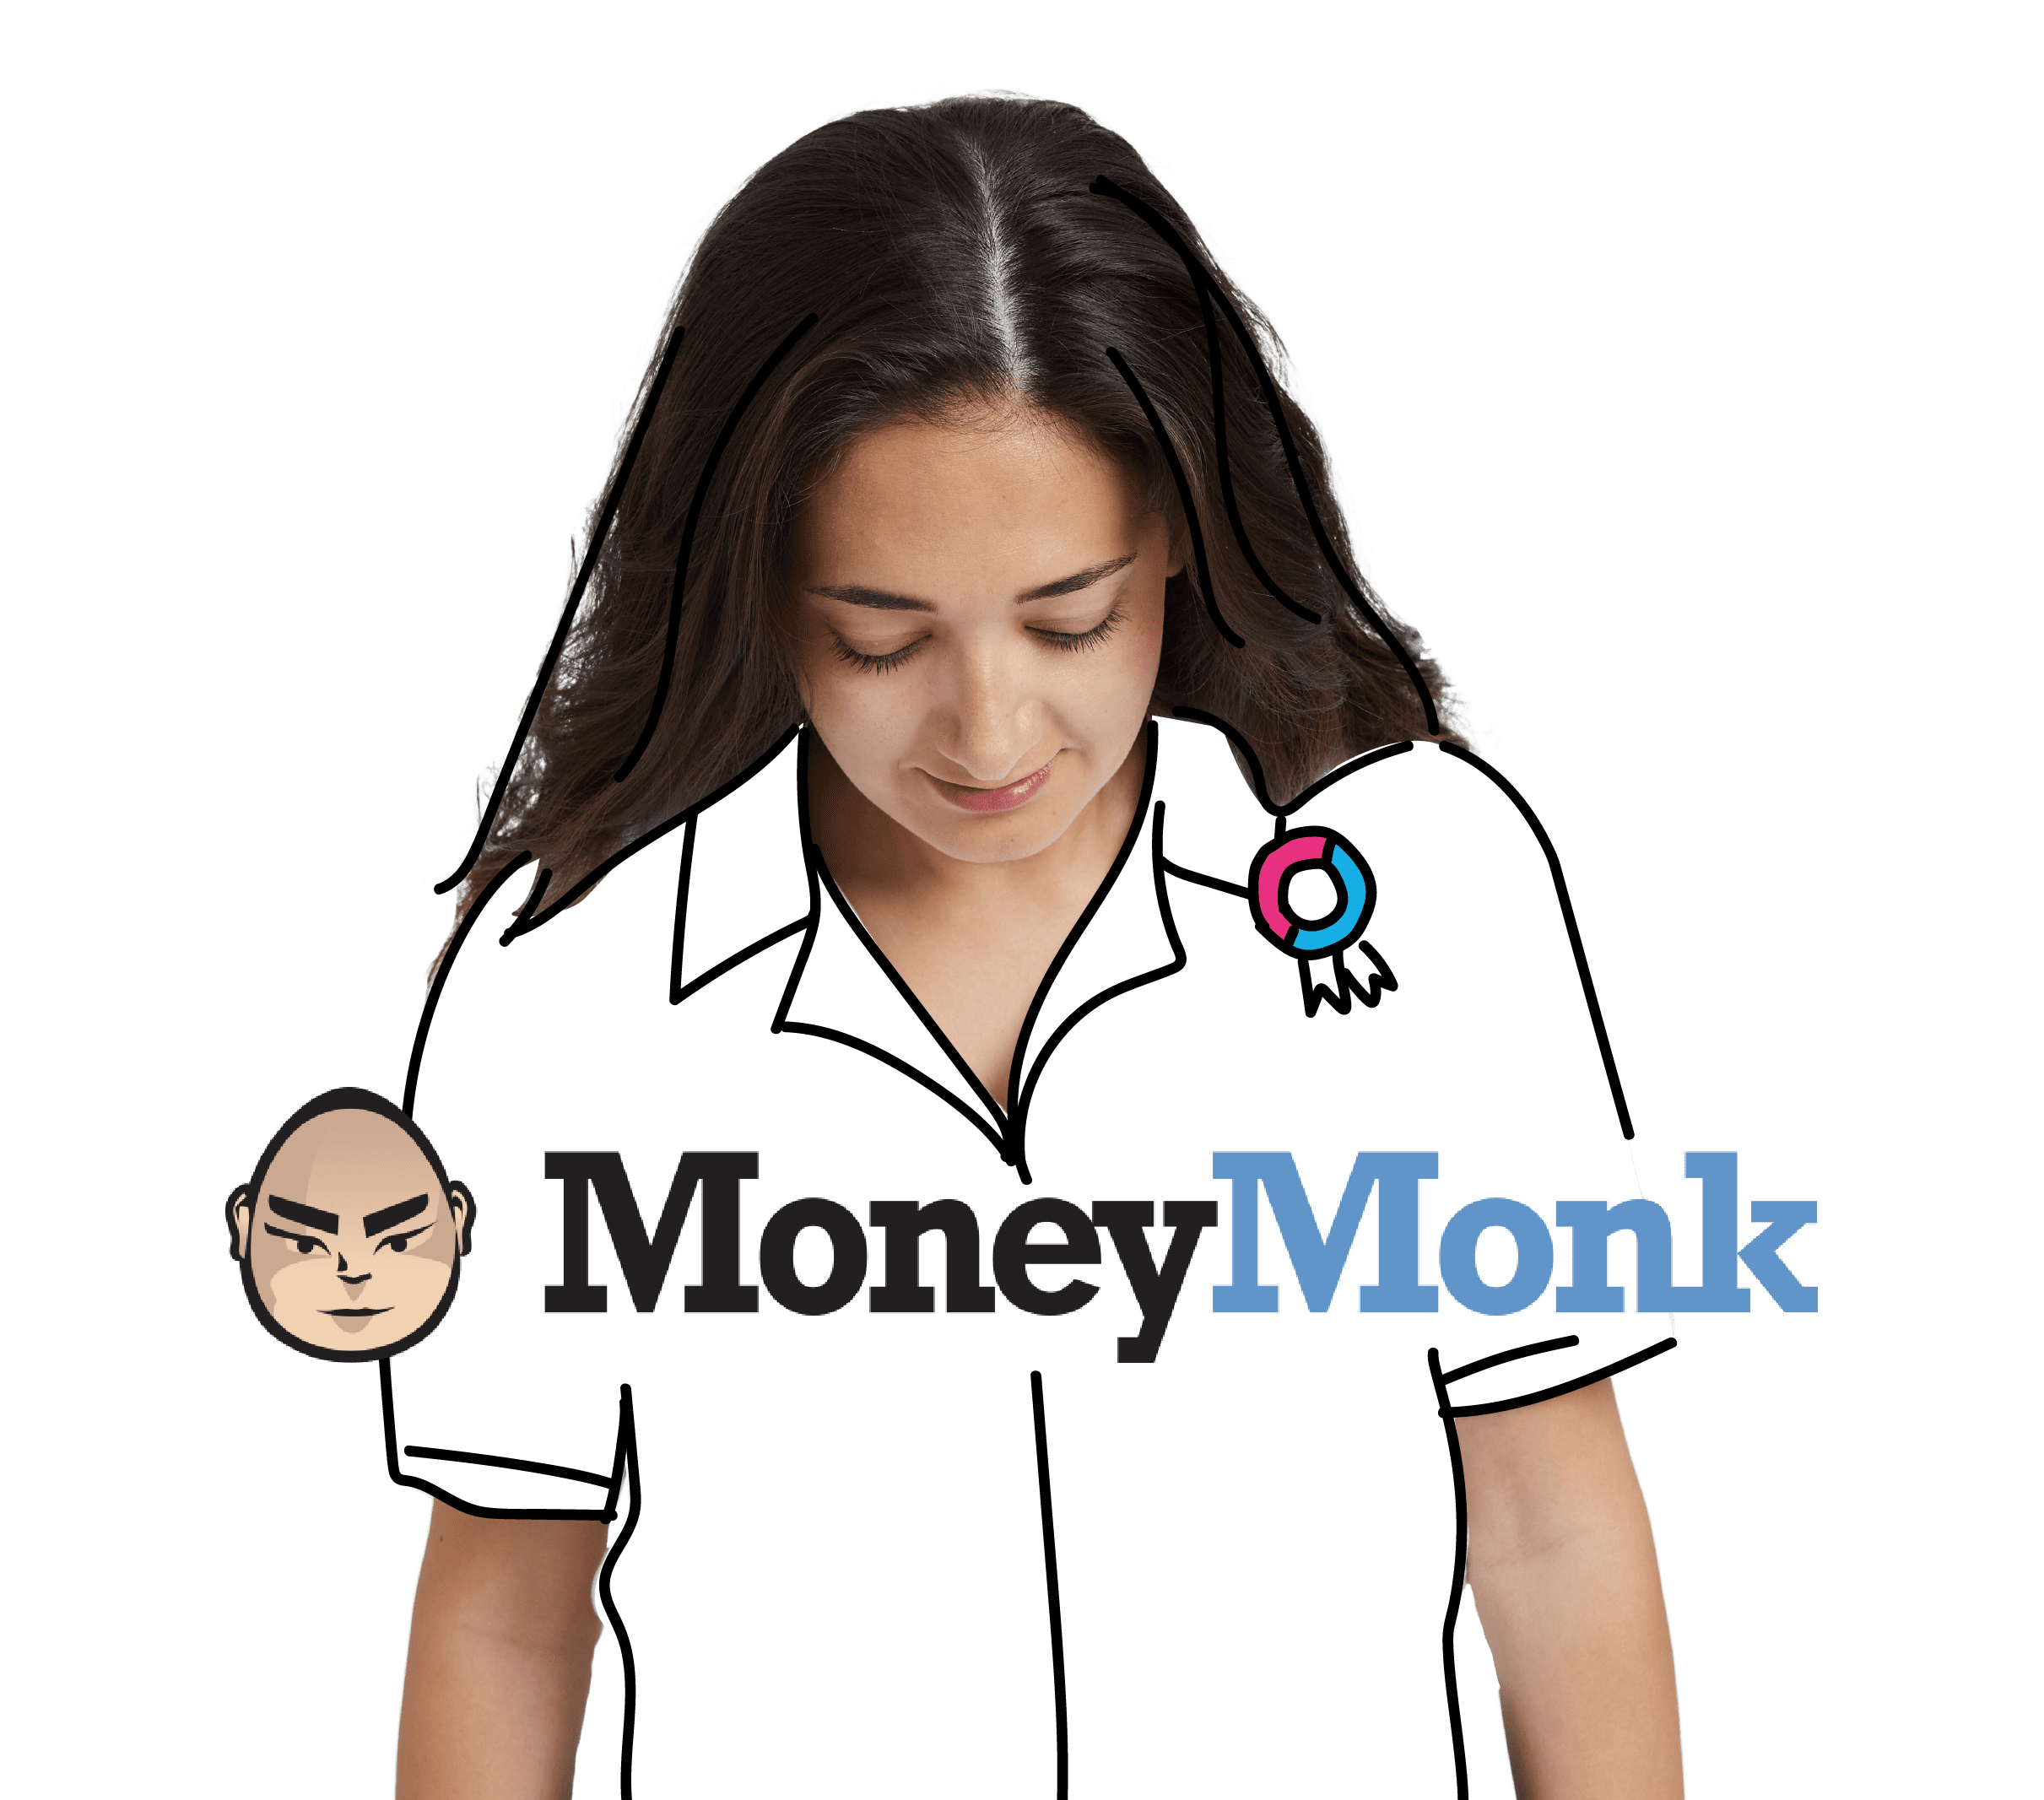 Partner MoneyMonk samenwerking met BrightPensioen, samen sterk voor zzp'ers en ondernemers